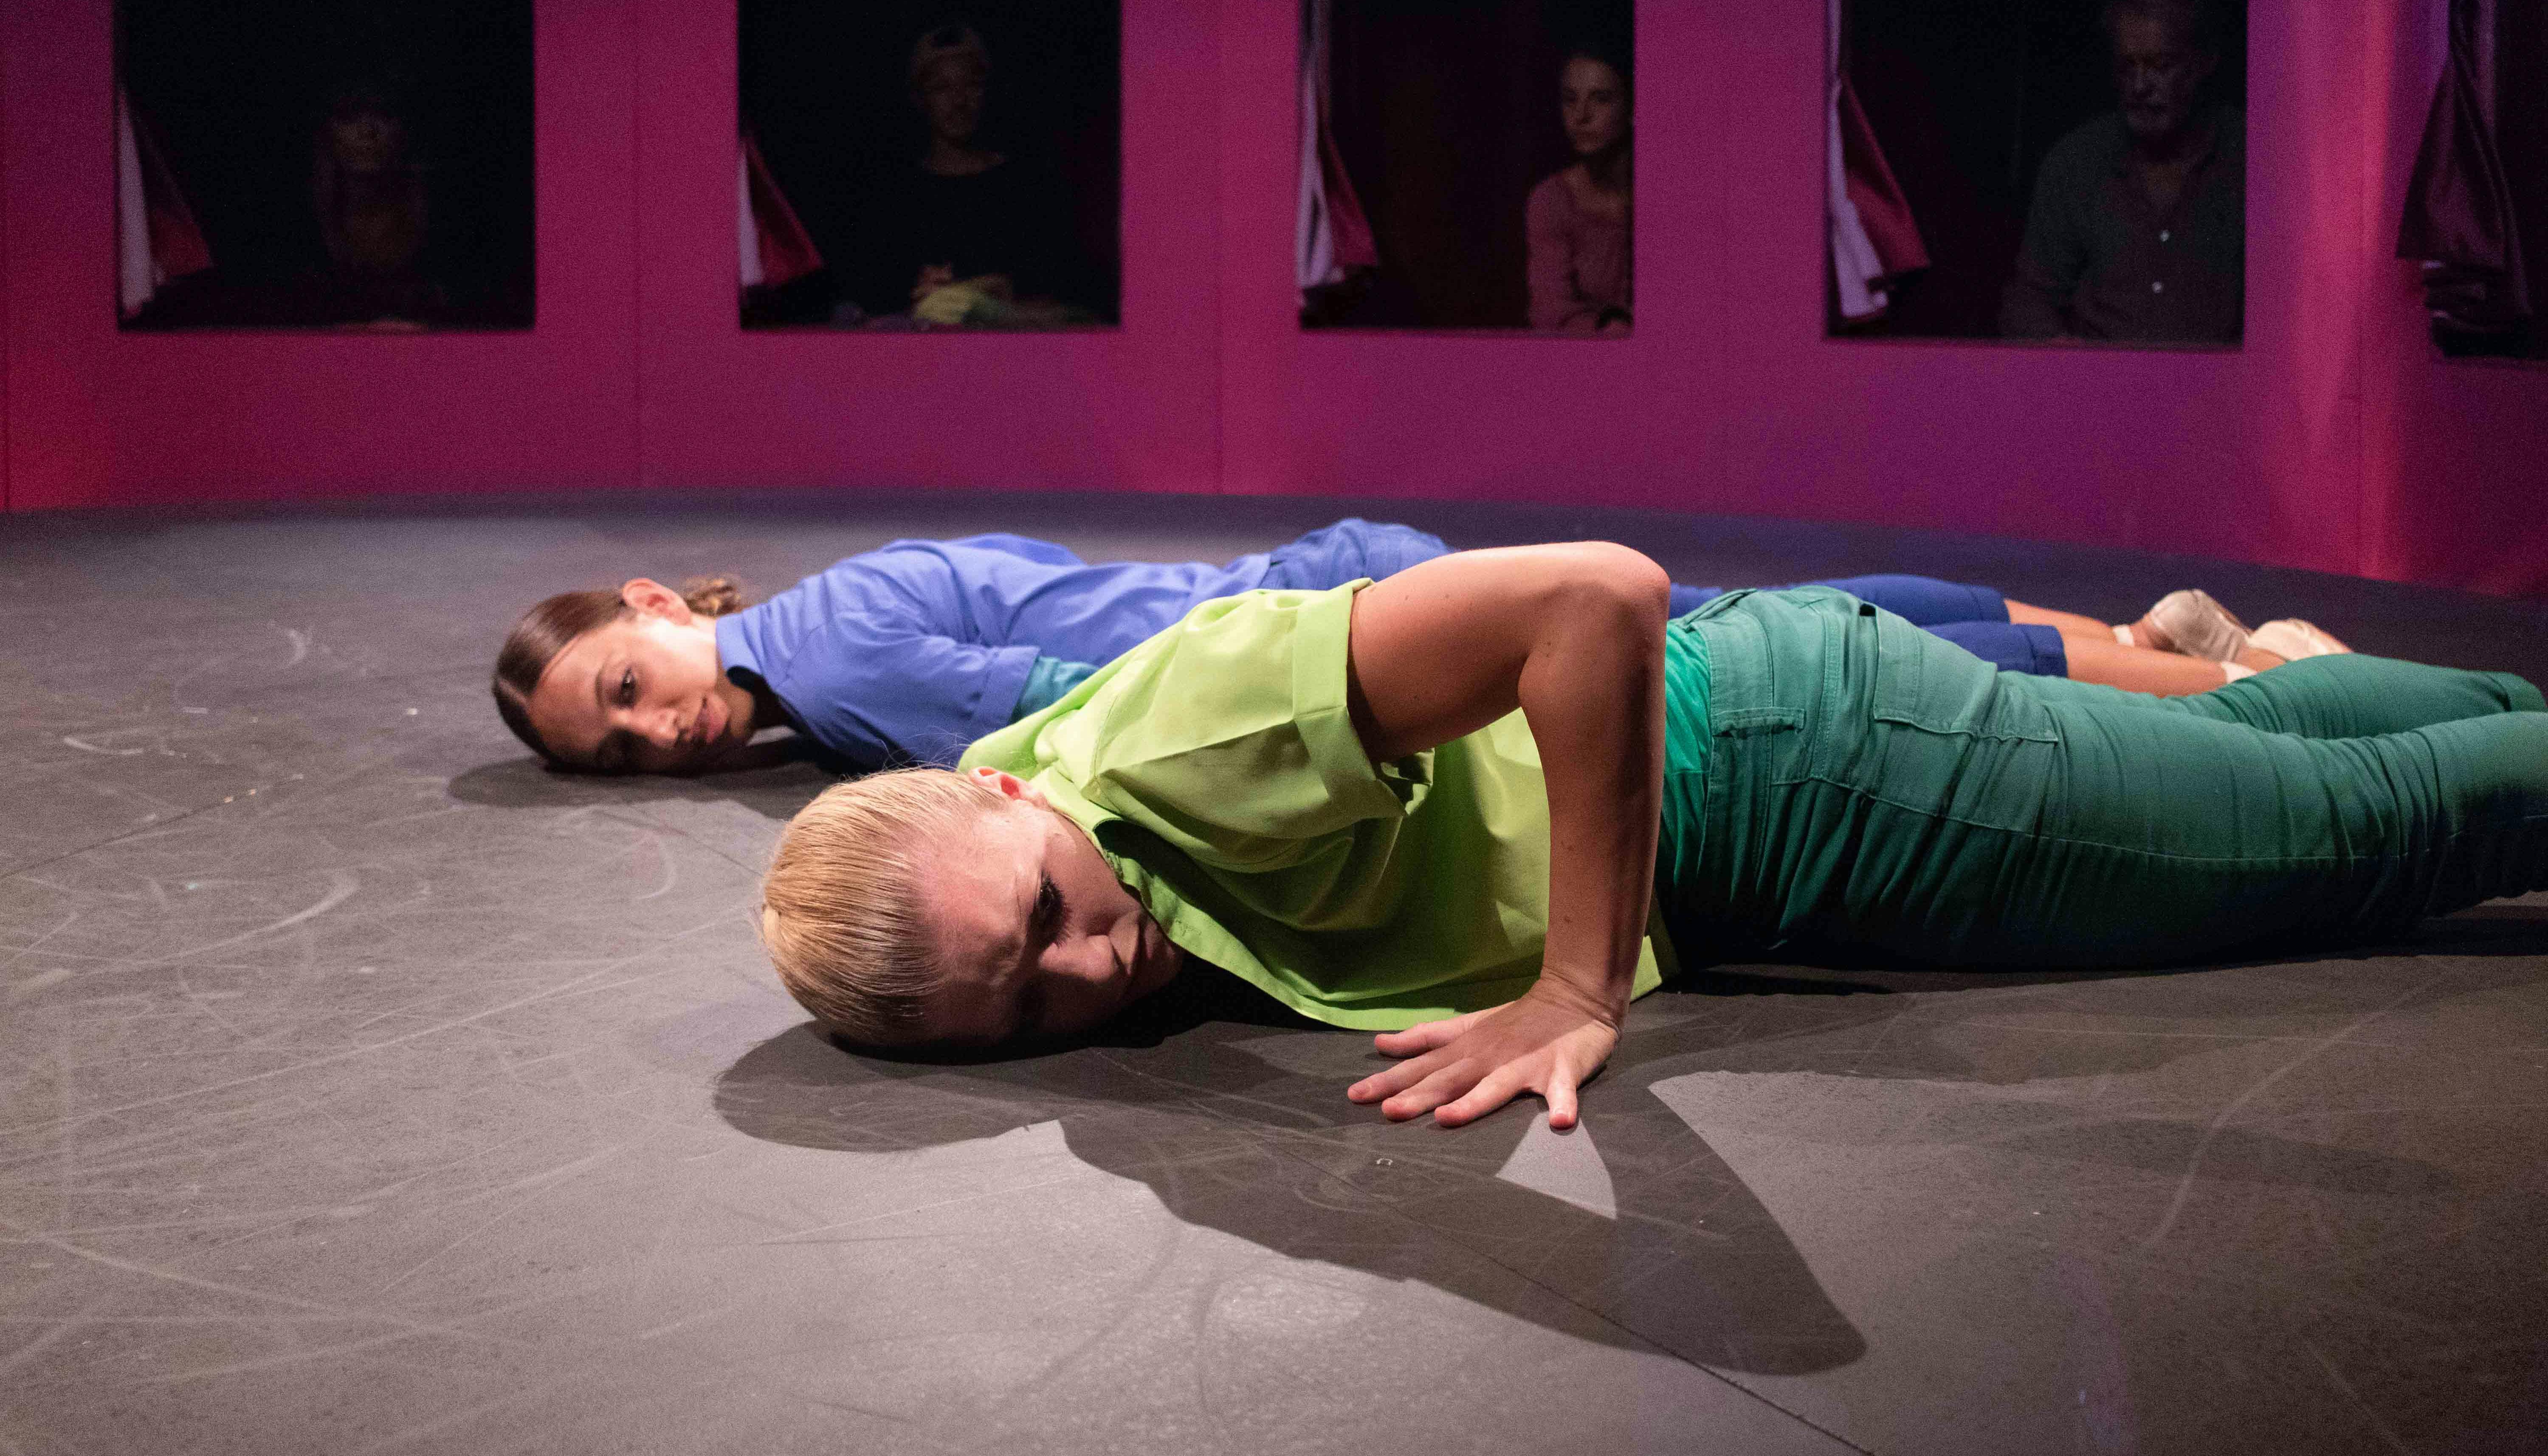 Due danzatrici sono sdraiate a terra prone, parallele tra loro. Una è vestita in blu, l'altra in verde. Dietro di loro, attraverso una serie di finestre, gli spettatori osservano.